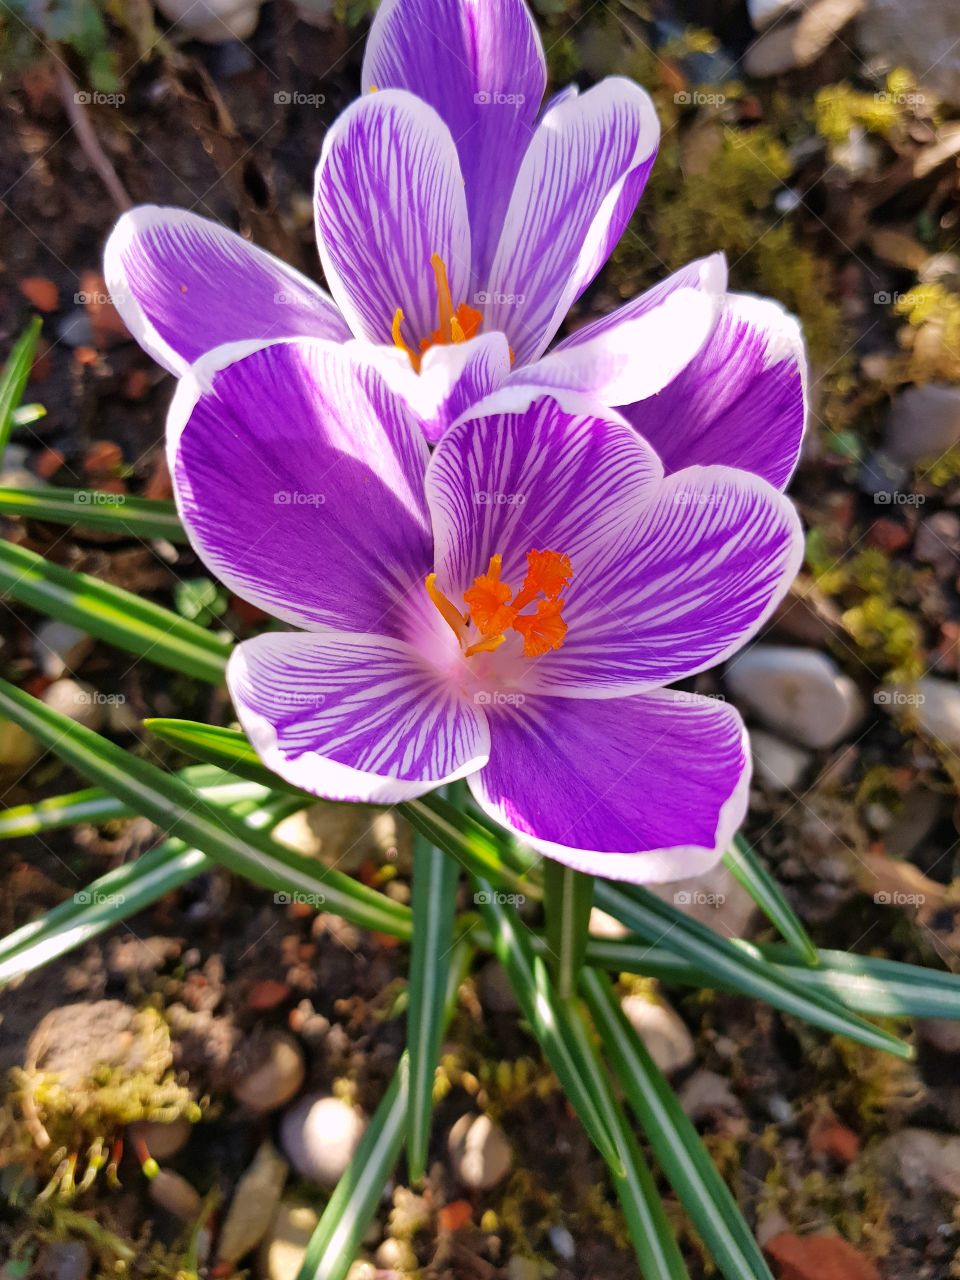 spring awakening